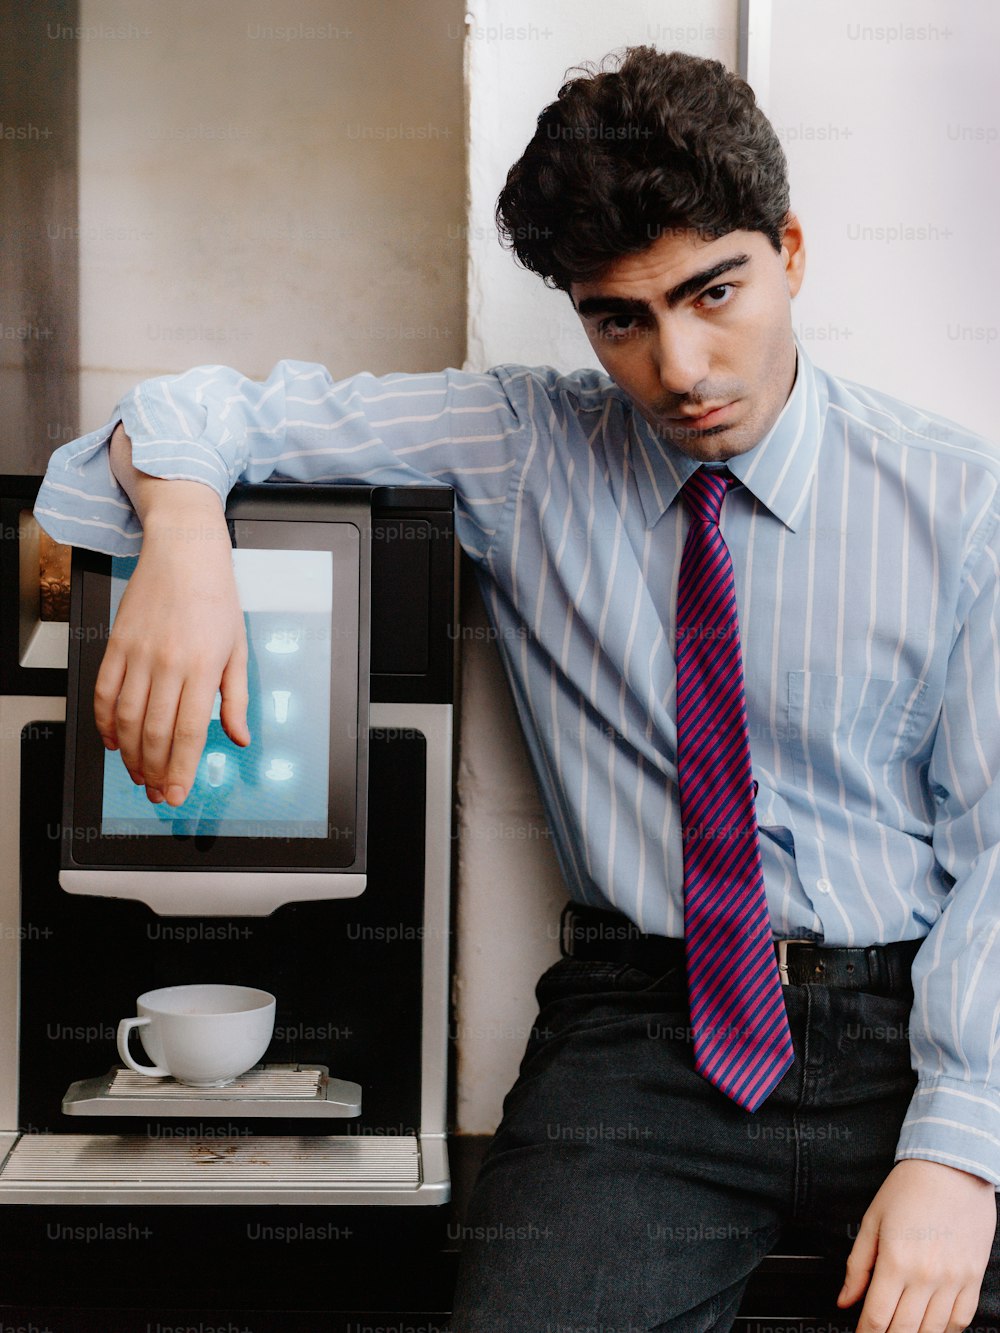 Un hombre con corbata apoyado en una máquina de café